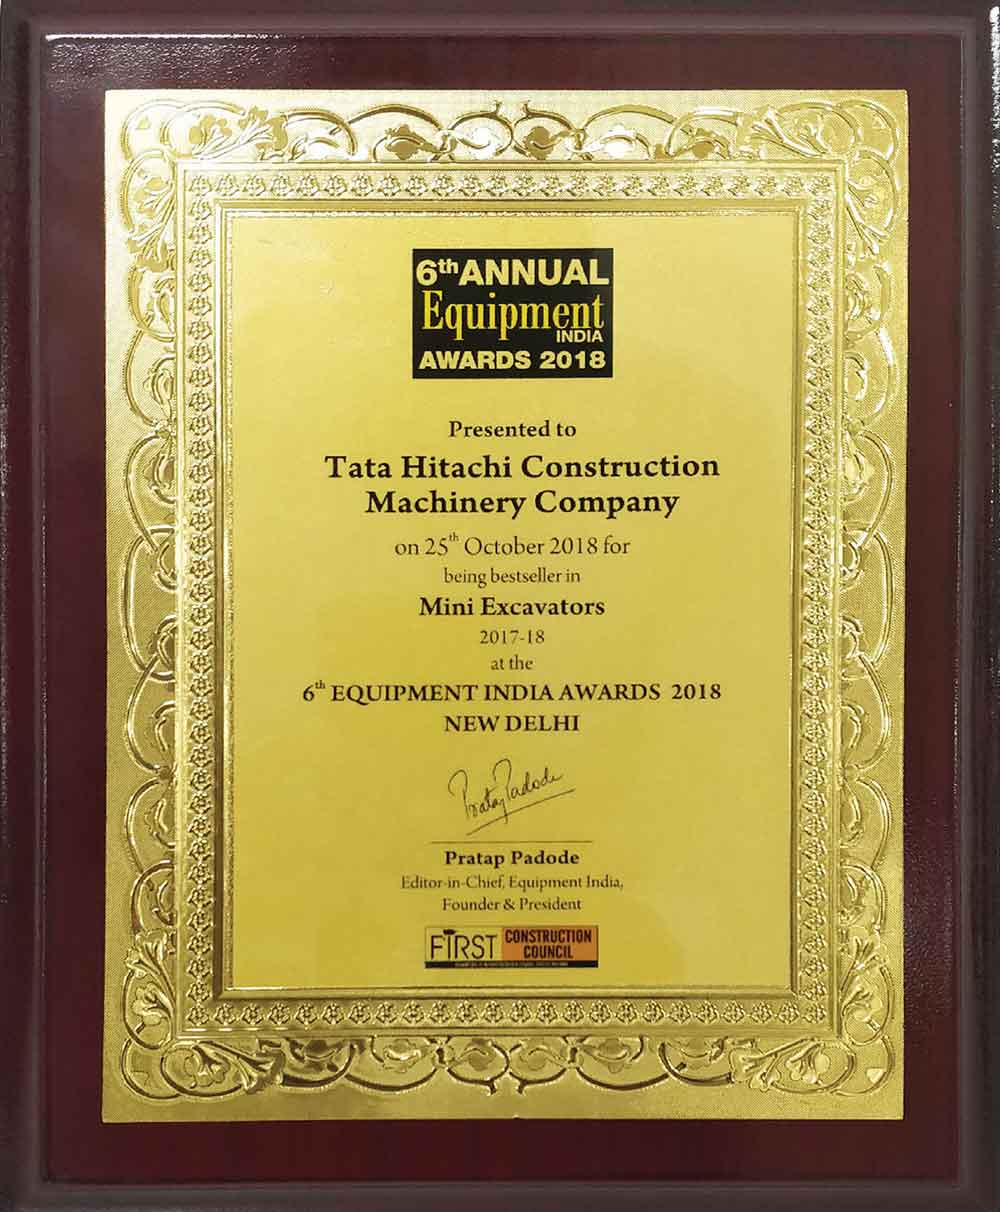 Bestseller in Mini Excavators Award Winner